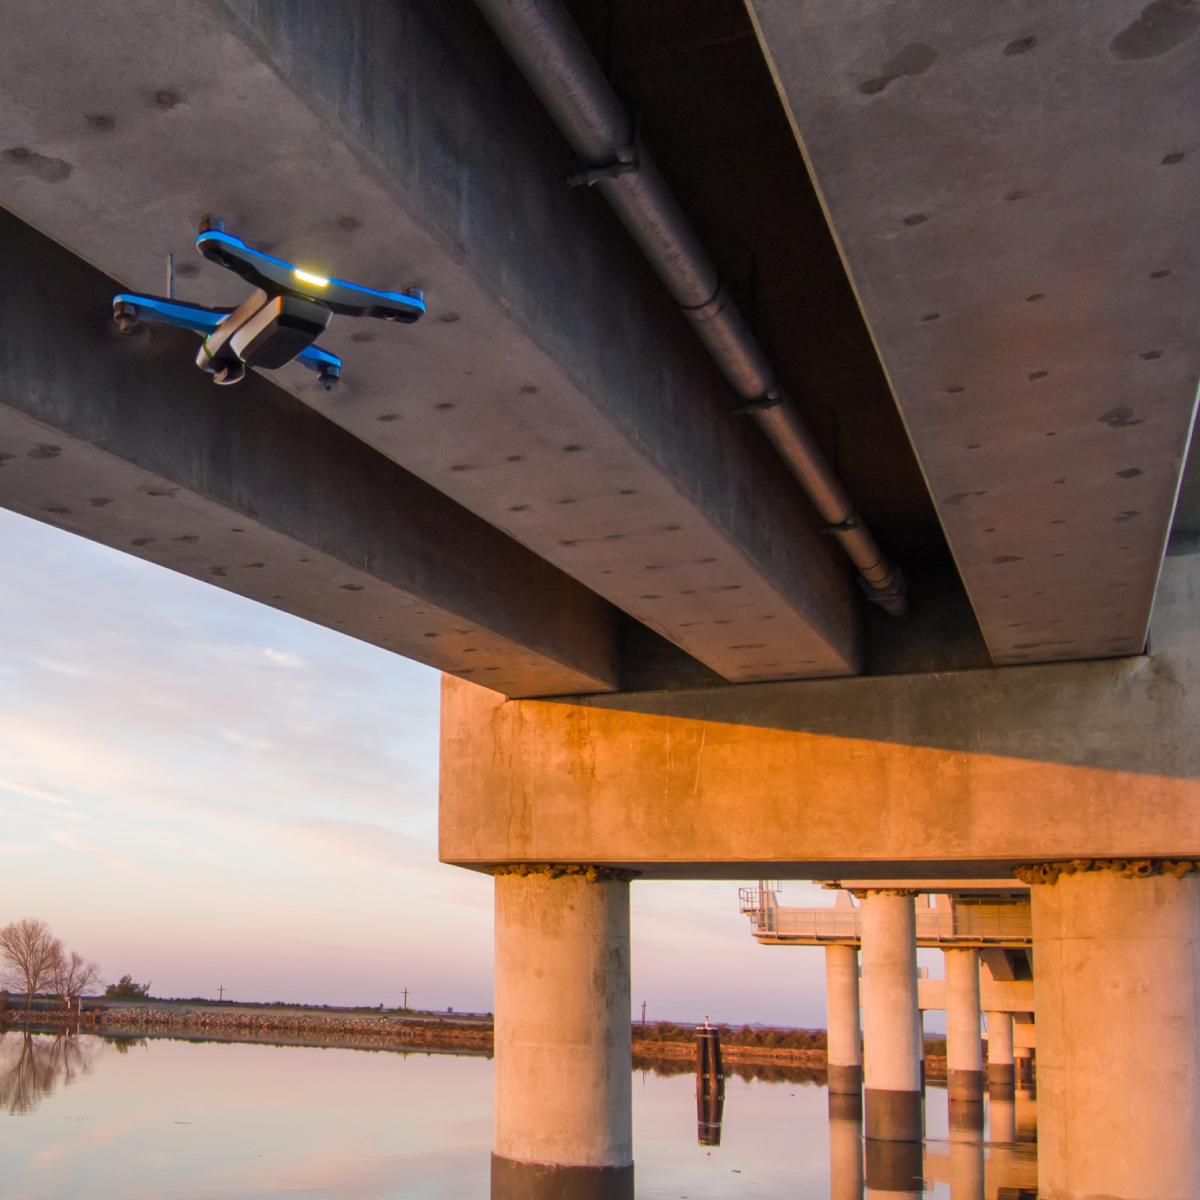 Skydio 2+ drone flying underneath a bridge